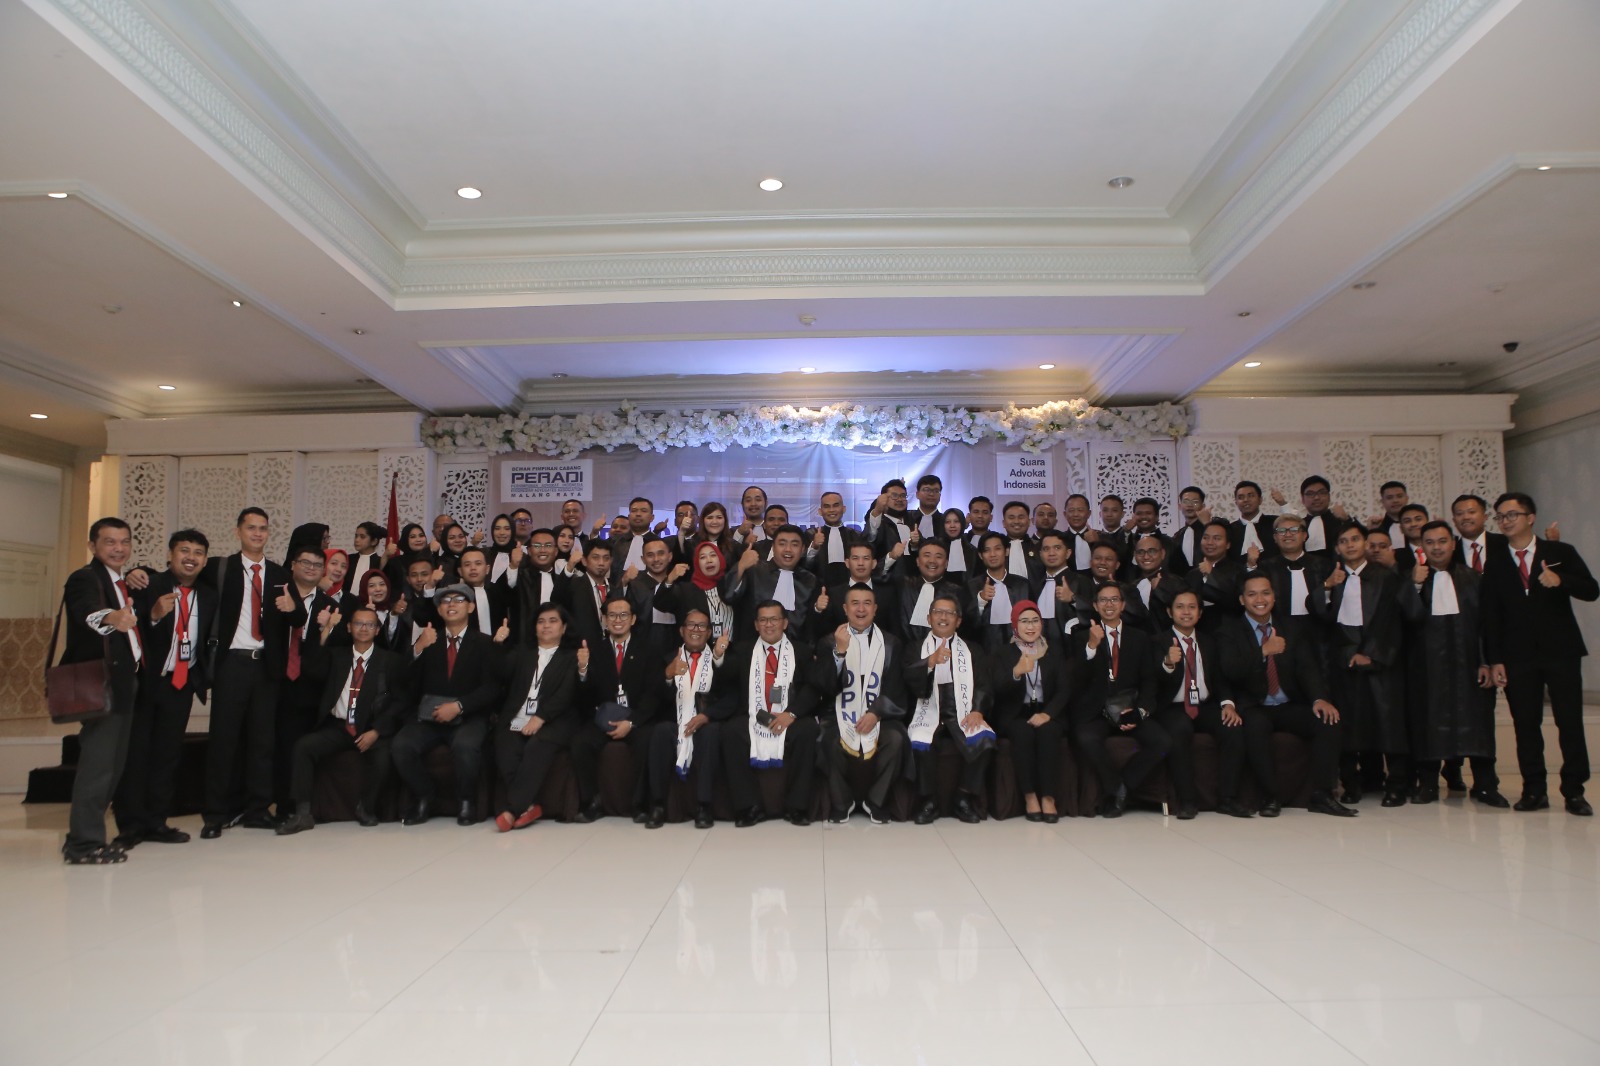 Pengangkatan dan Pelantikan Sumpah Advokat DPC Malang Raya & Banyuwangi Raya, di Hotel Empire Palace, Surabaya - 14 Maret 2023. Sebanyak 86 peserta